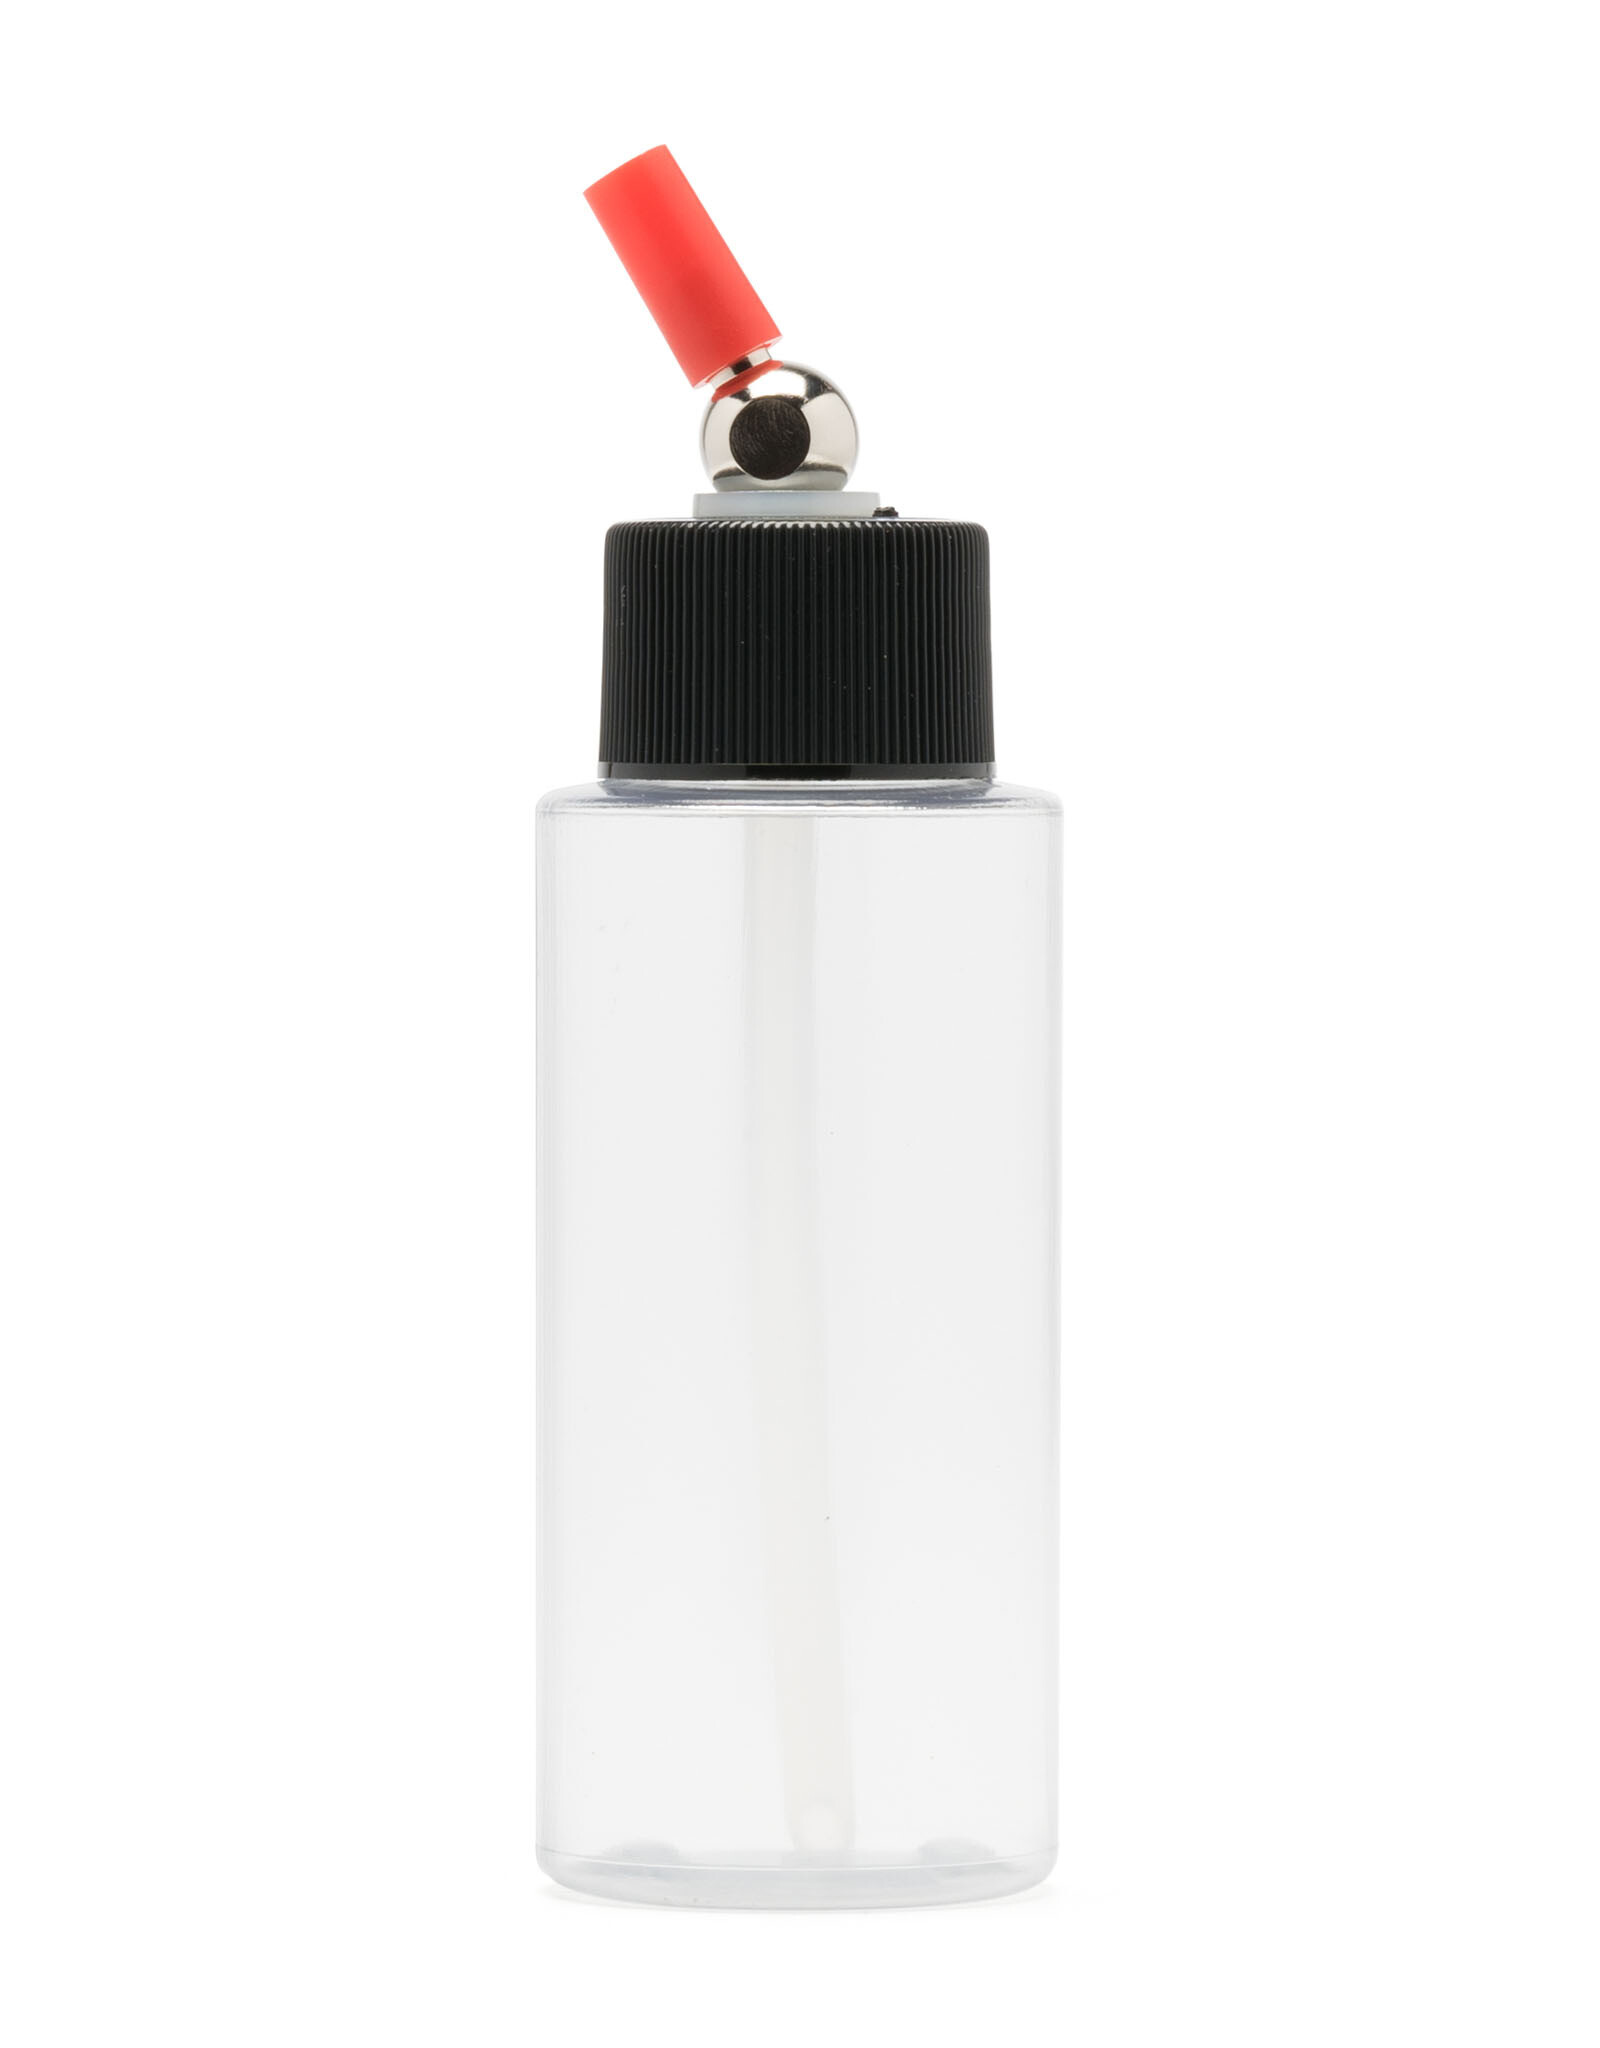 Medea Iwata Crystal Clear Bottle 2oz/60ml Cylinder With Adaptor Cap